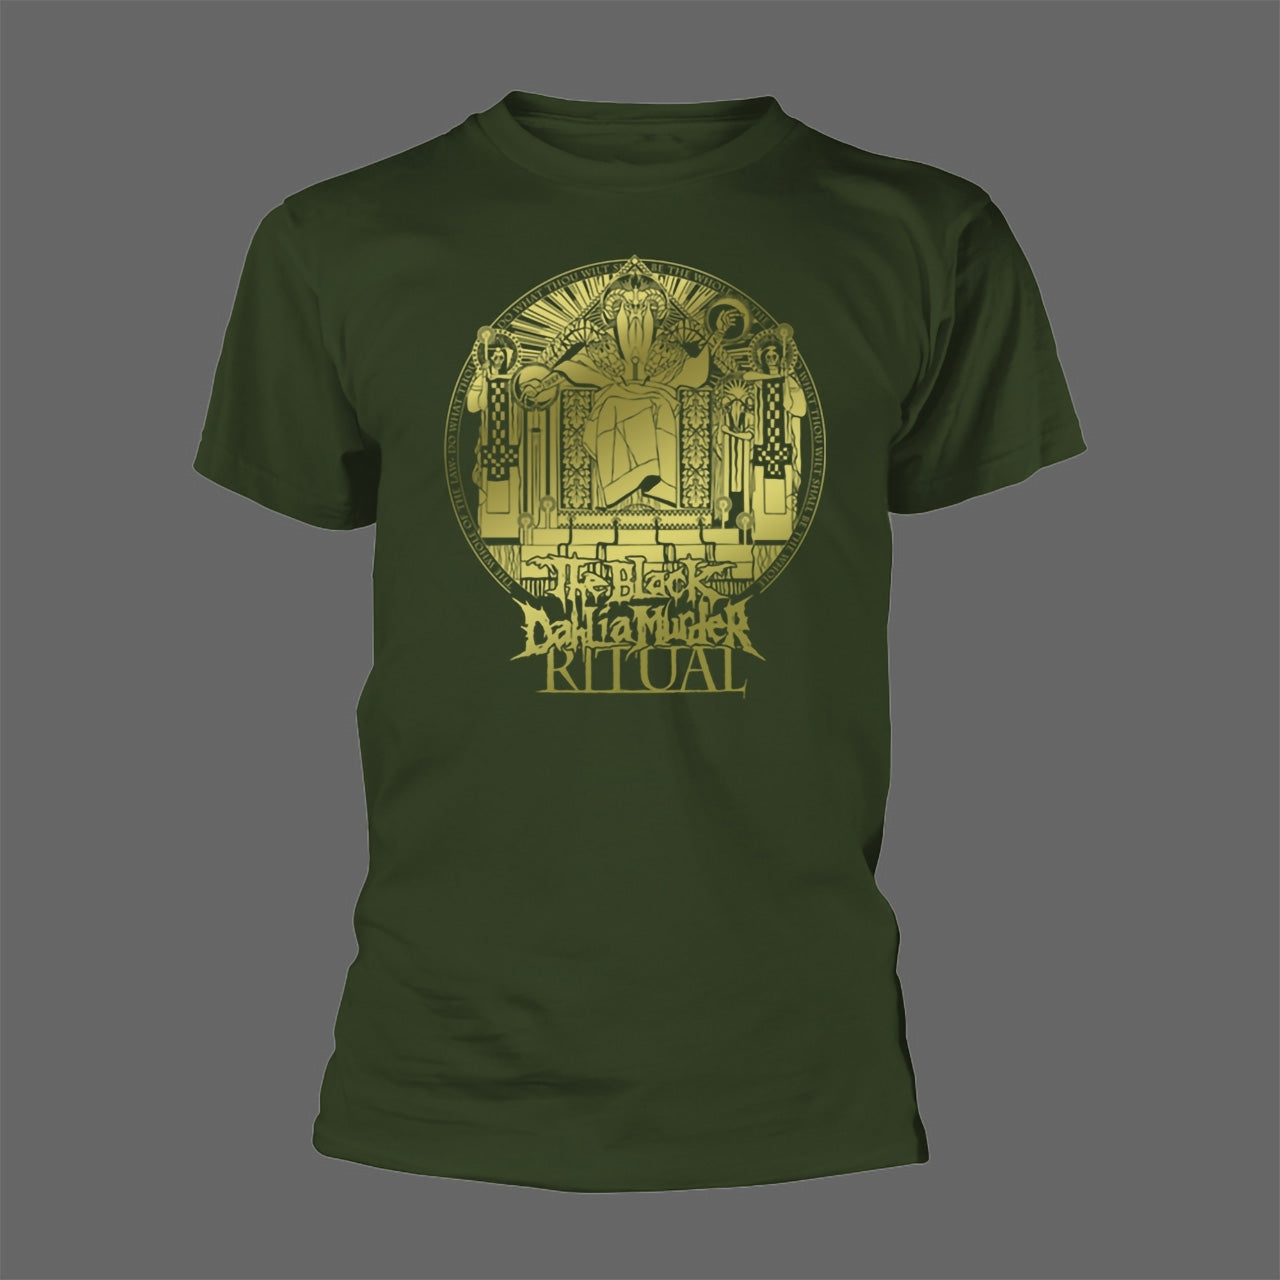 The Black Dahlia Murder - Ritual (T-Shirt)